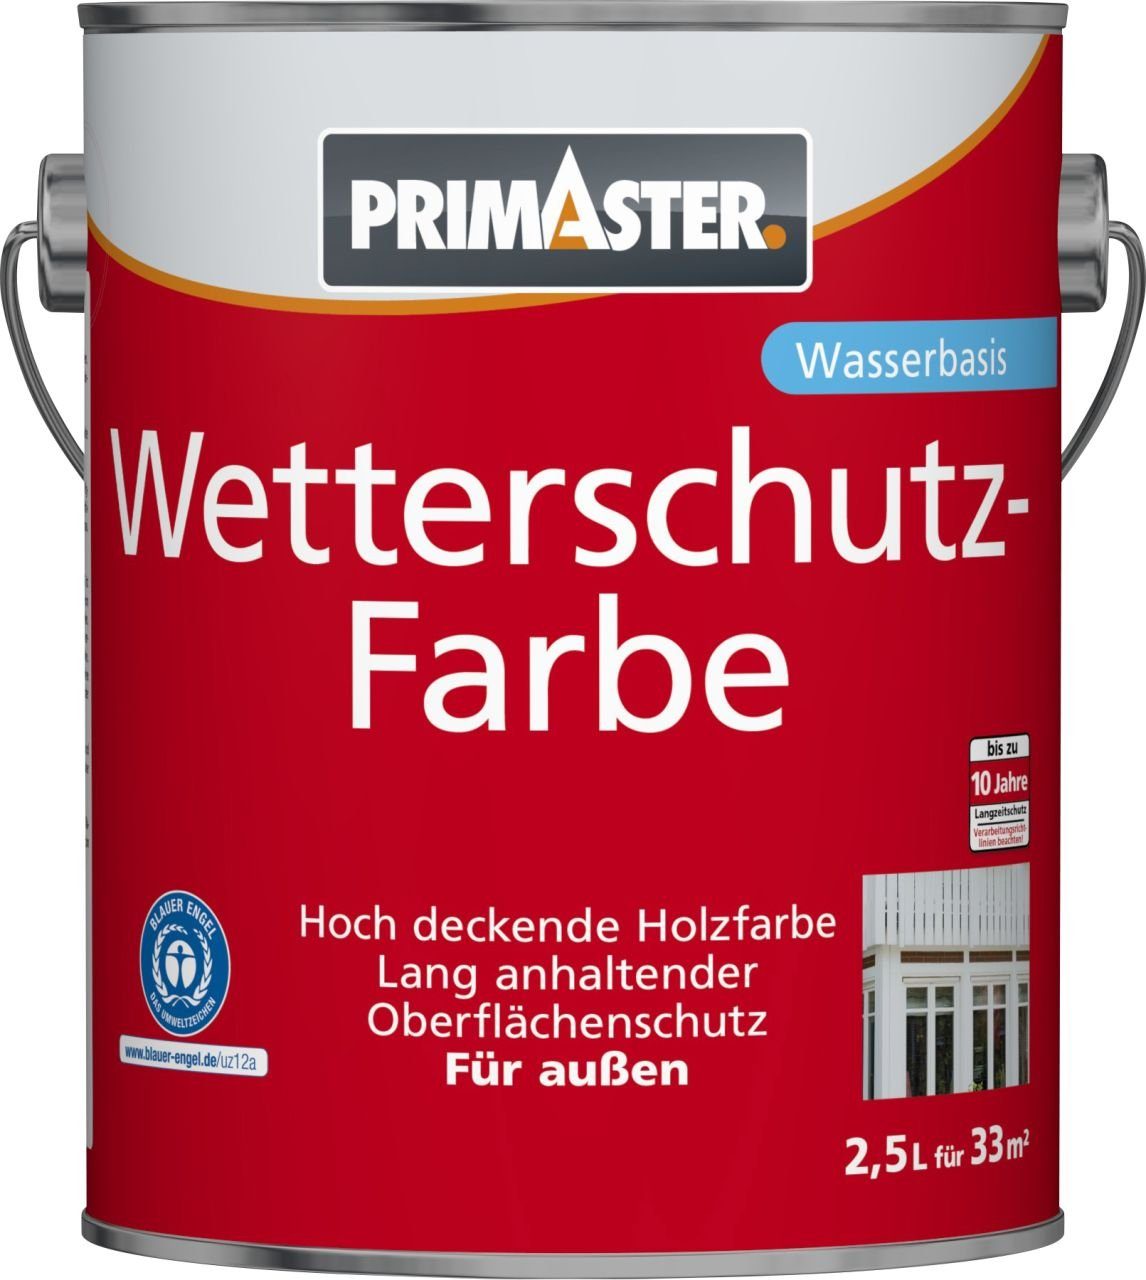 Wetterschutzfarbe L schwedenrot Holzschutzlasur Primaster Primaster 2,5